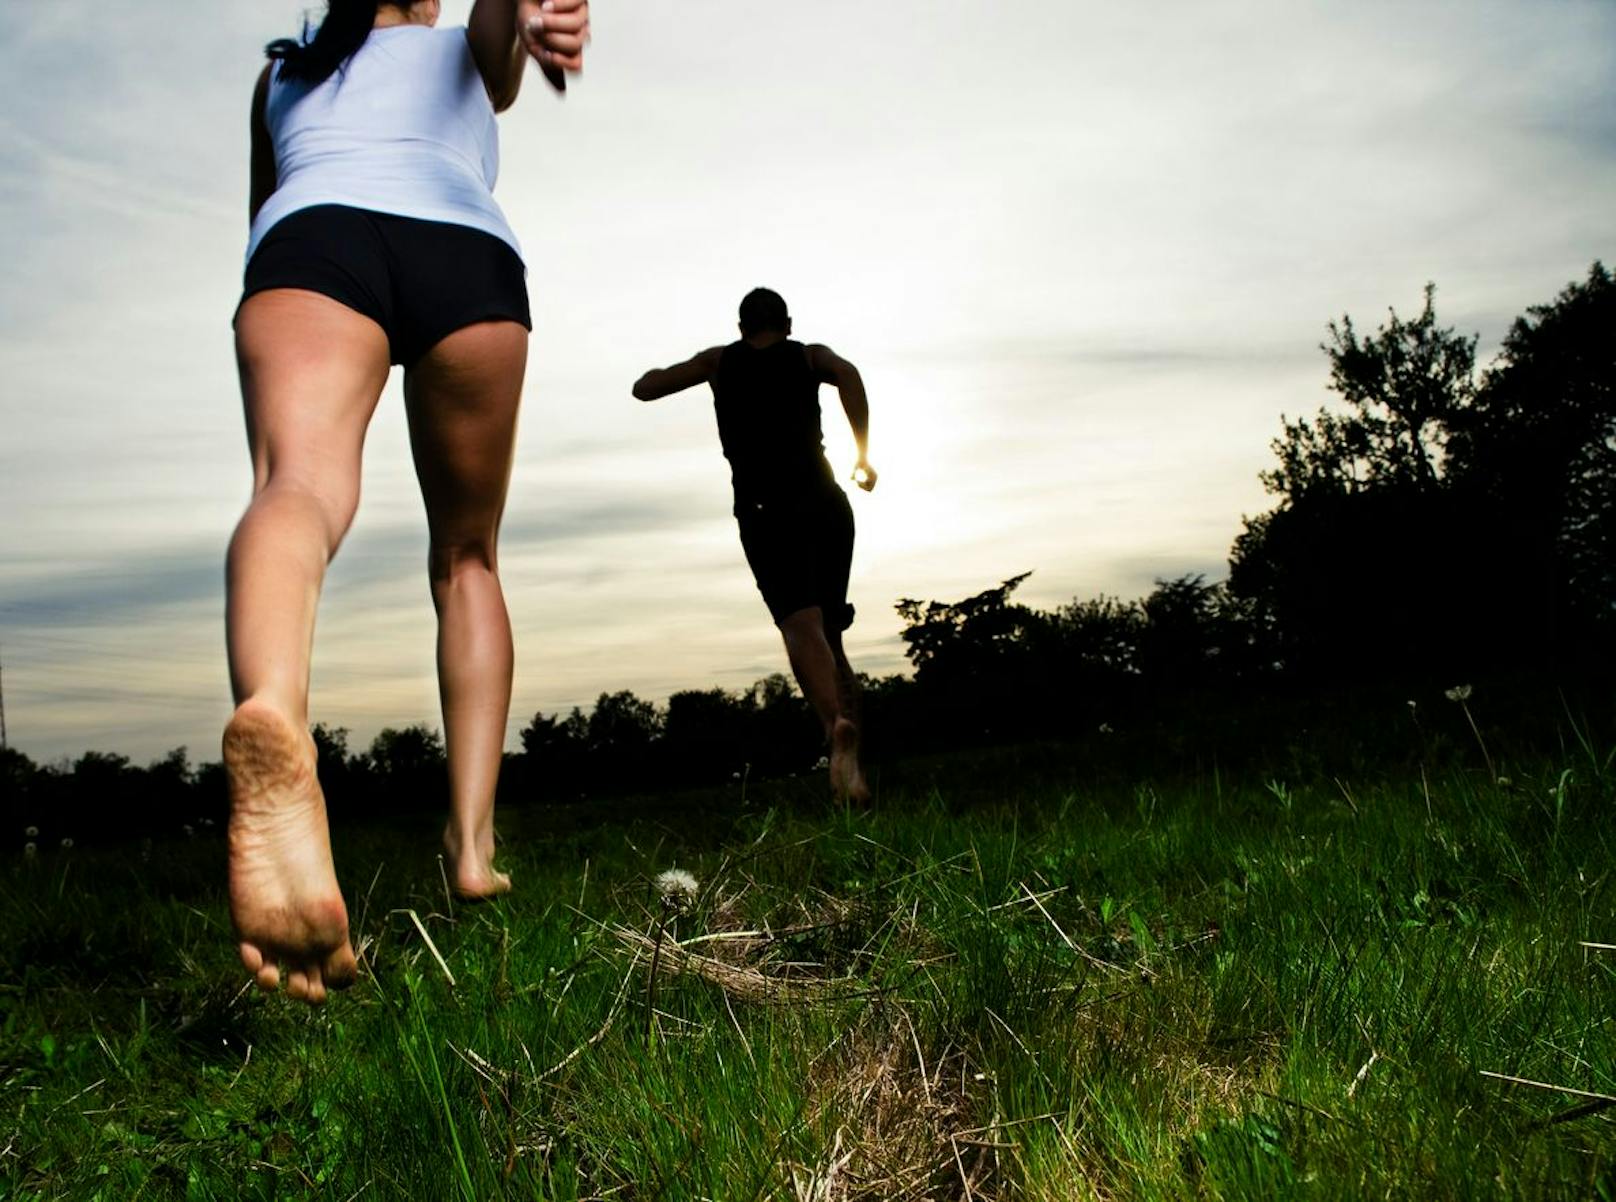 Laufe vorerst langsam auf Böden wie Erde und Gras. Danach kannst du langsam auf Steinchen rennen. Das Ziel ist, dass du dich mehr mit der Natur verbunden fühlst und dich mit mehr Achtsamkeit bewegst.